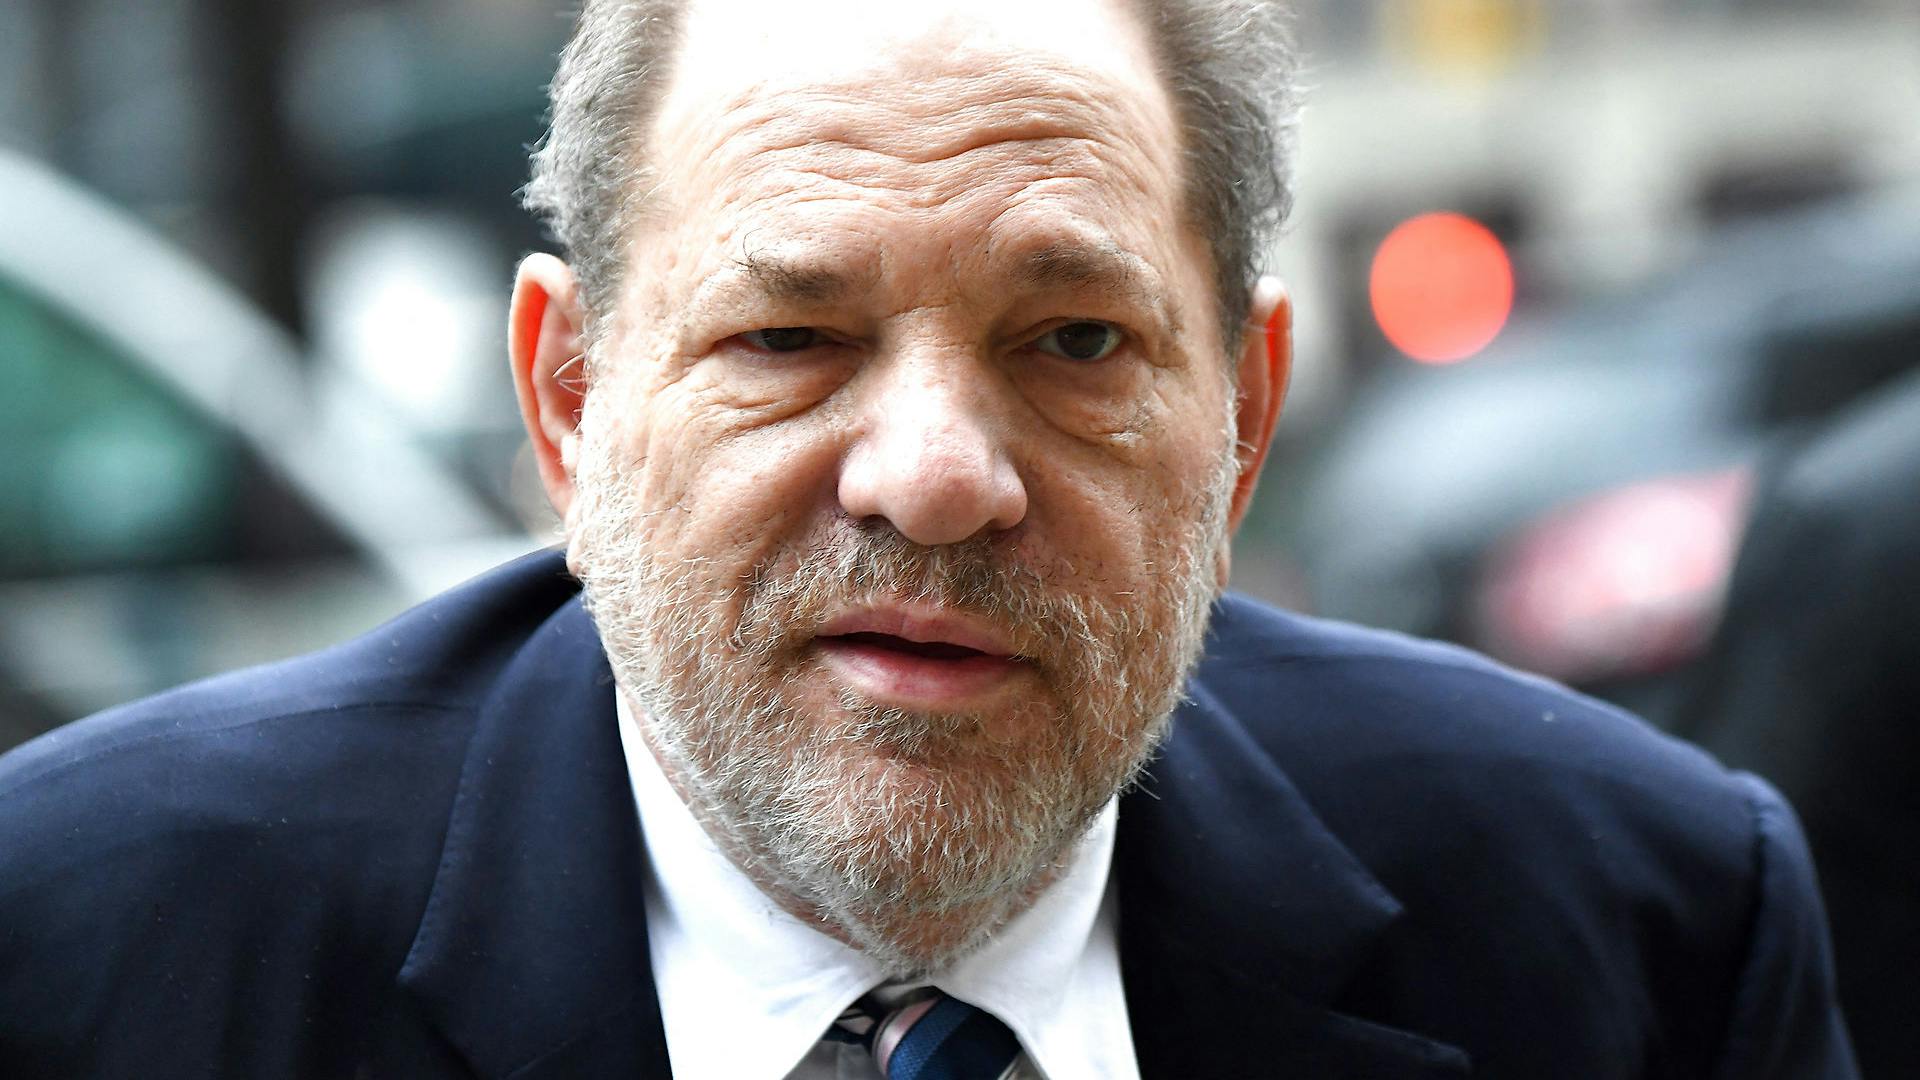 Harvey Weinstein afsoner i øjeblikket en 23 år lang fængselsstraf for voldtægt og seksuelt overgreb.
